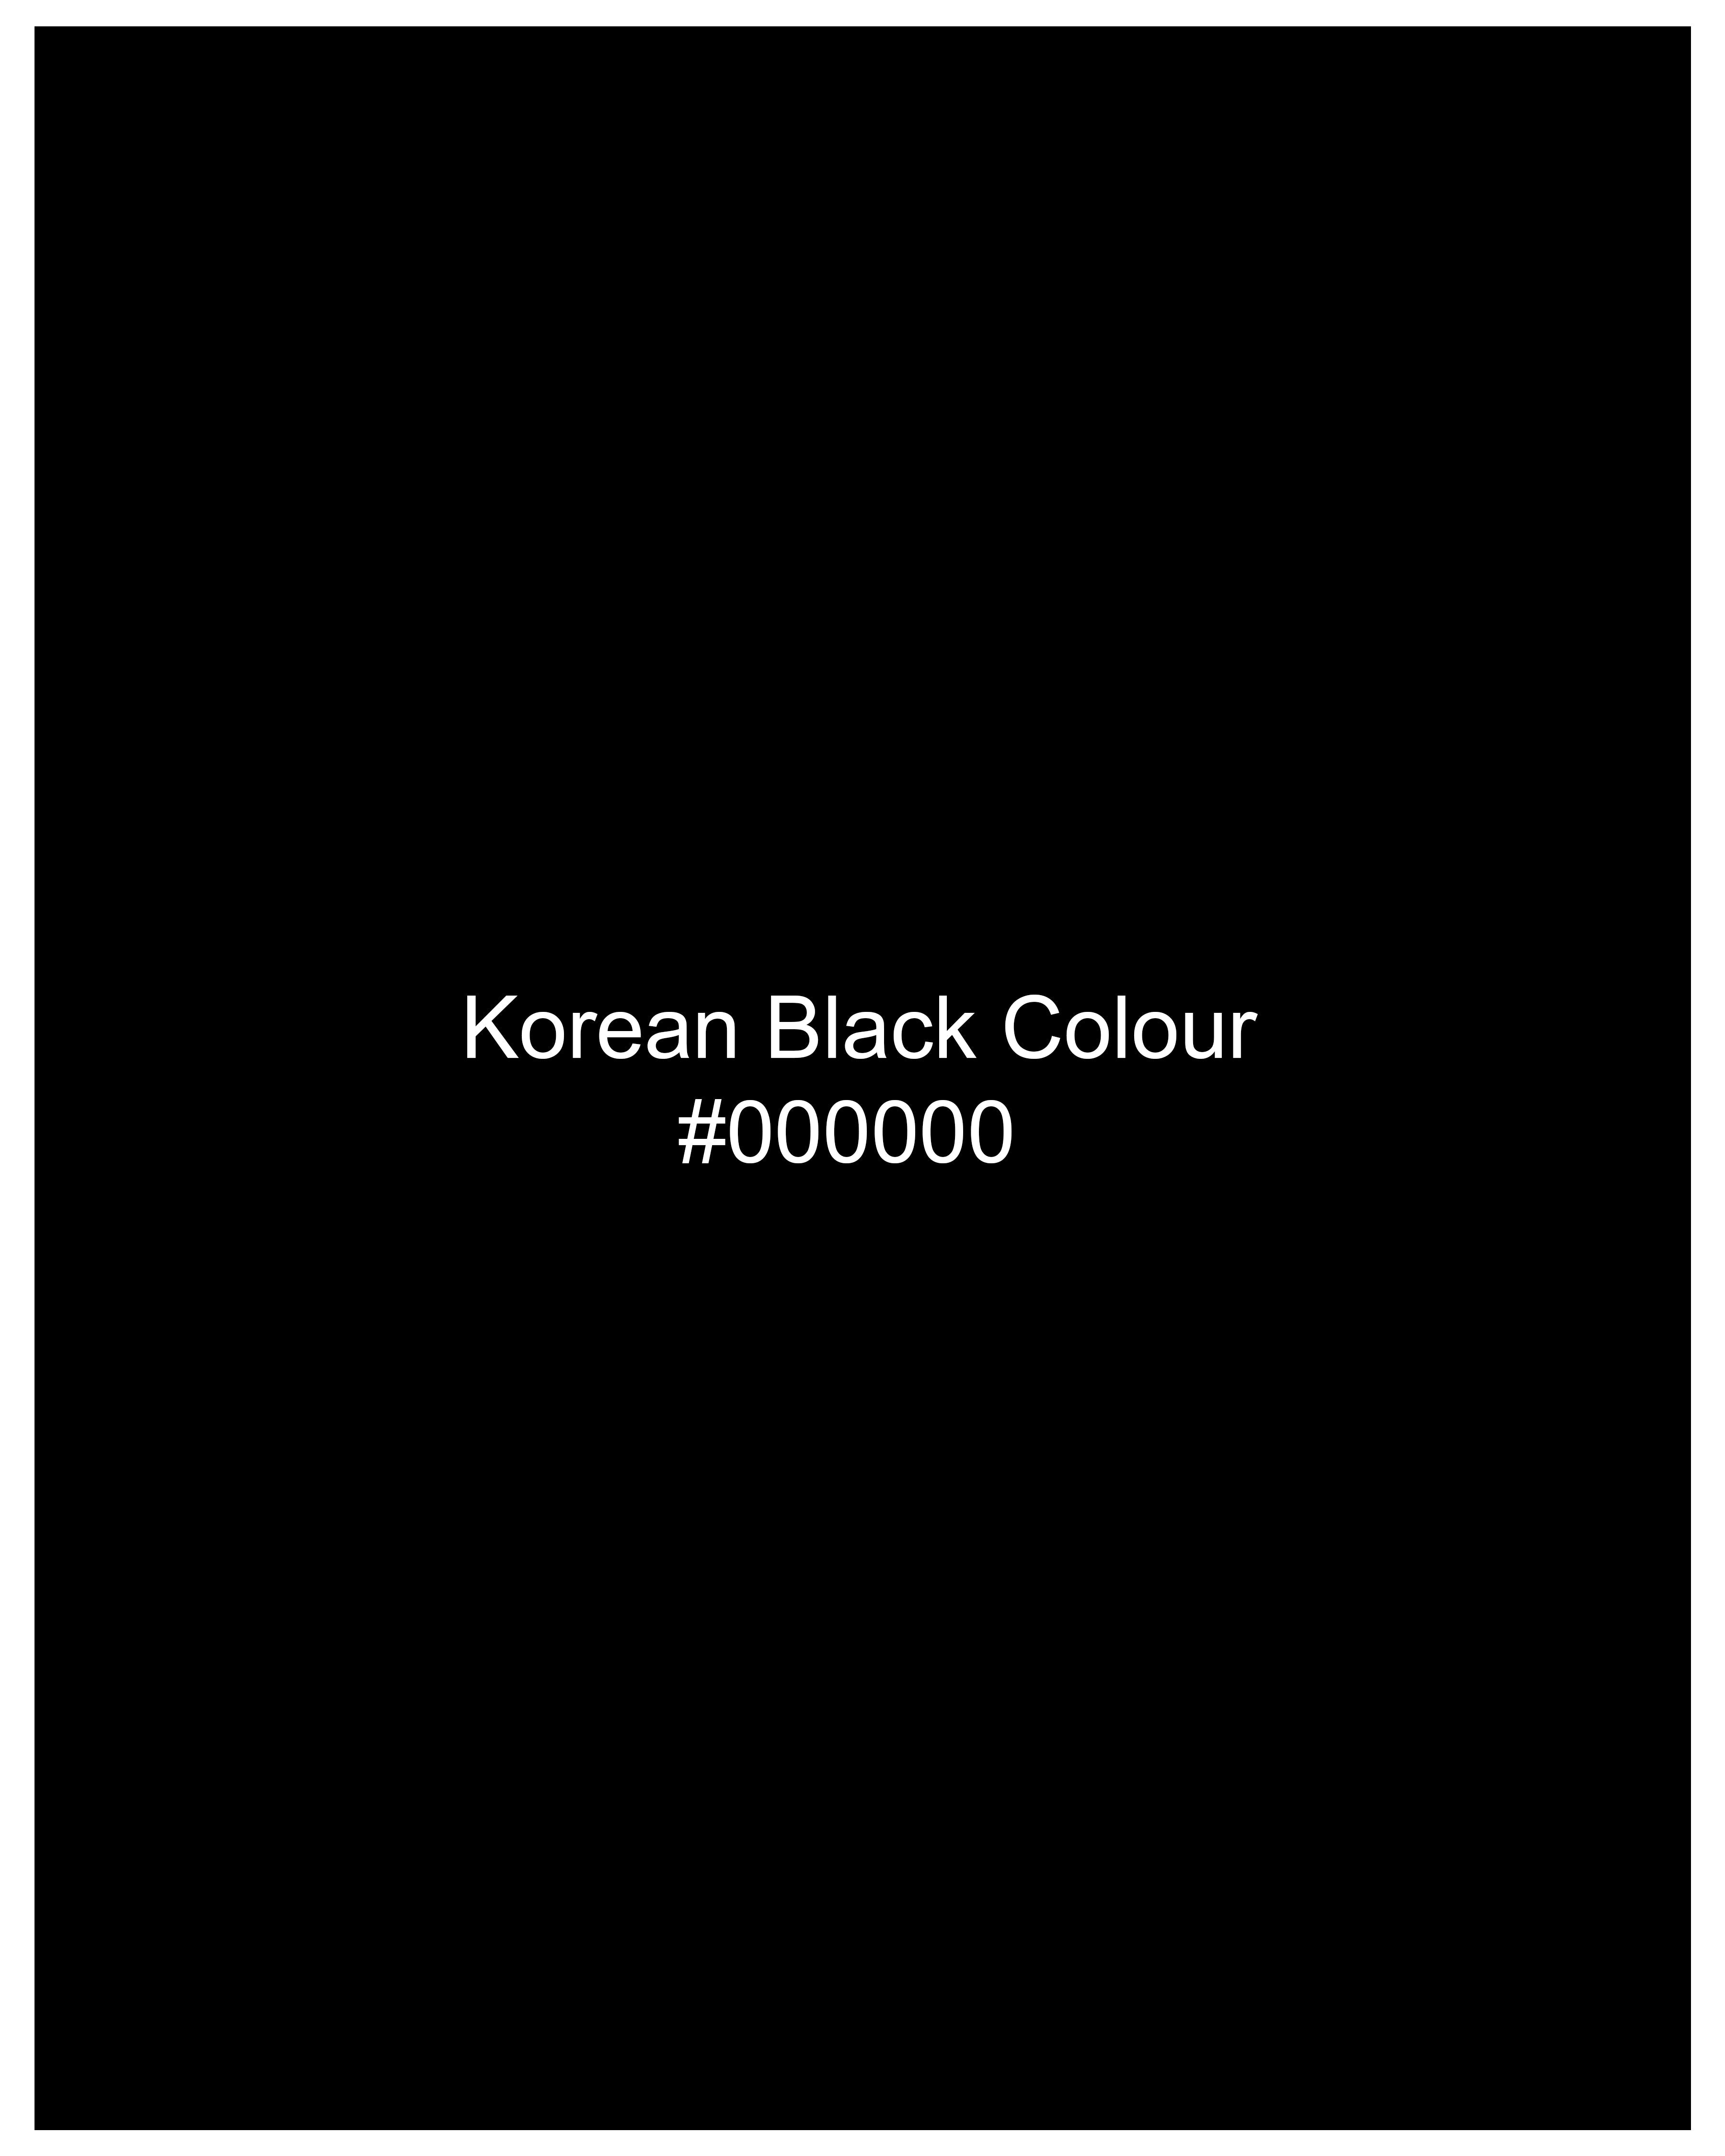 Korean Black (The Best Black We Have) Designer Suit ST2607-KWL-D14-36, ST2607-KWL-D14-38, ST2607-KWL-D14-40, ST2607-KWL-D14-42, ST2607-KWL-D14-44, ST2607-KWL-D14-46, ST2607-KWL-D14-48, ST2607-KWL-D14-50, ST2607-KWL-D14-52, ST2607-KWL-D14-54, ST2607-KWL-D14-56, ST2607-KWL-D14-58, ST2607-KWL-D14-60